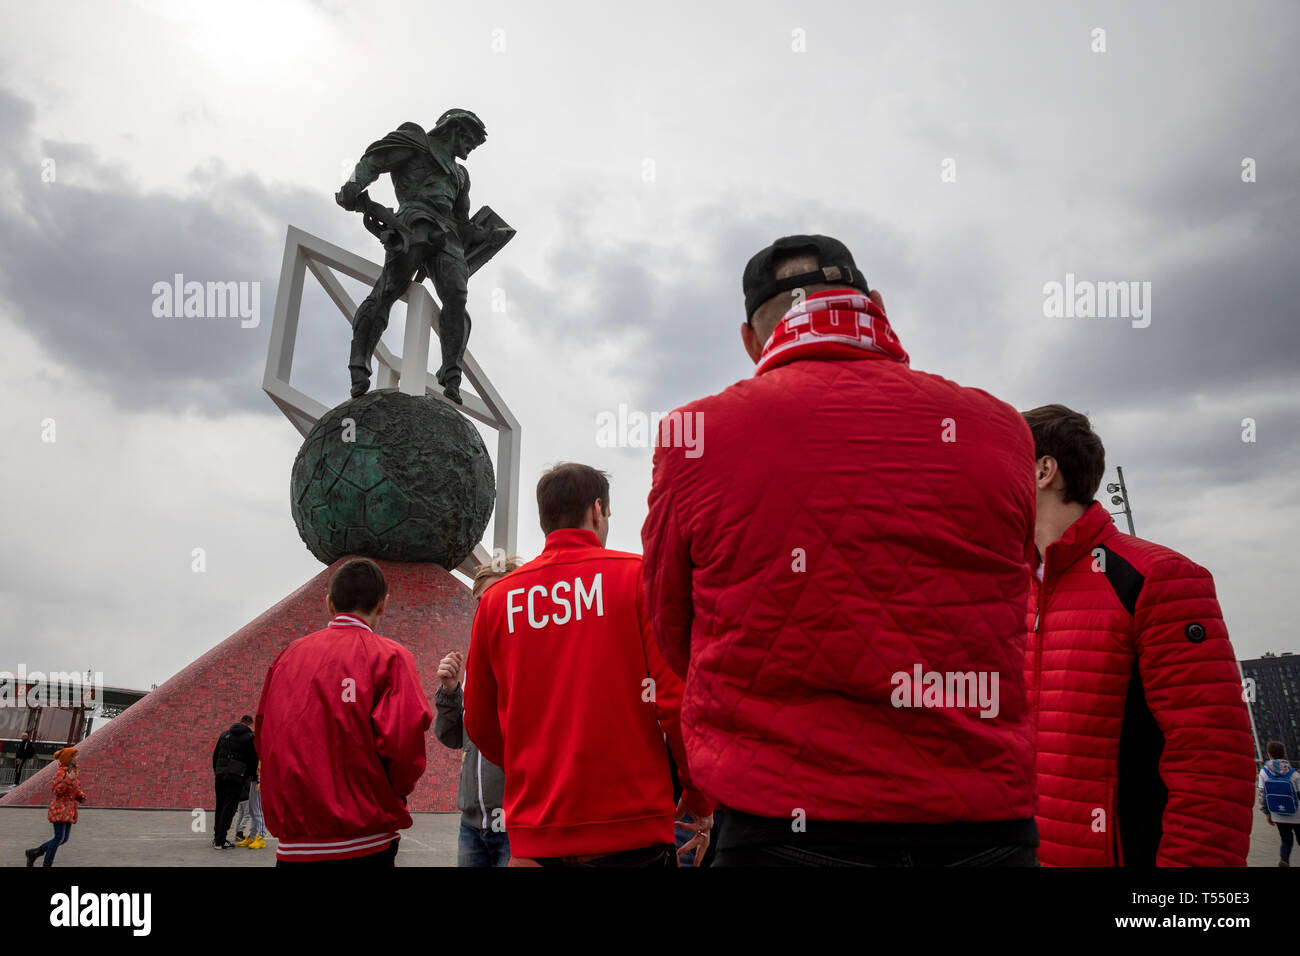 Fernando do FC Spartak Moscou em ação - rights-managed imagem #27091285